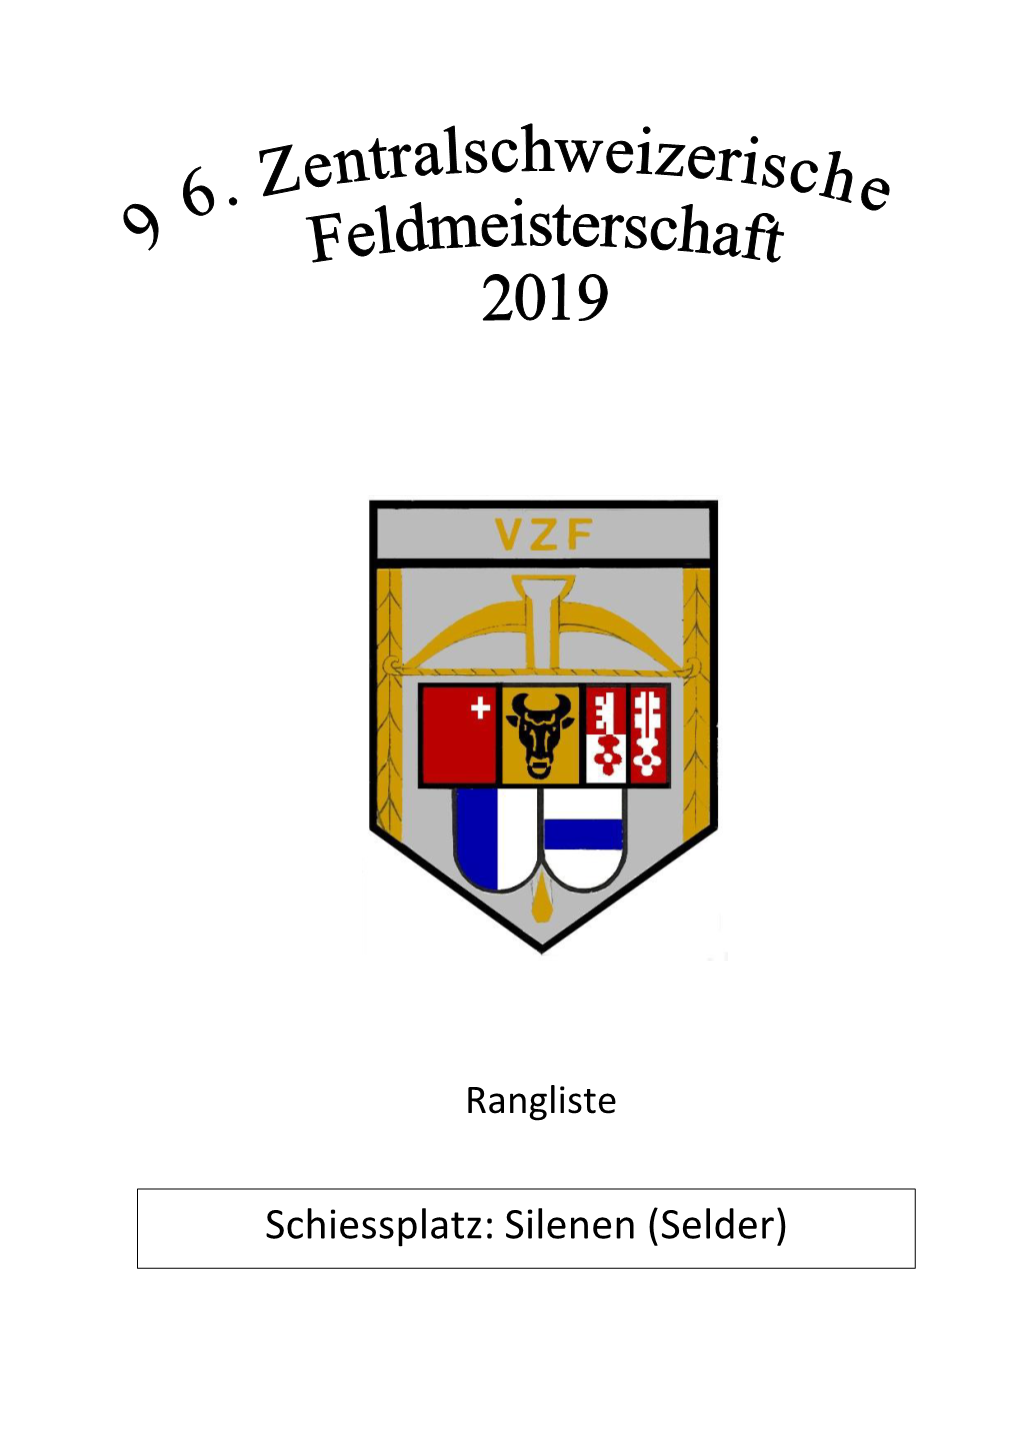 Schiessplatz: Silenen (Selder) Verband Zentralschweizerischer Feldschützen 05.06.2019 Einzelrangliste